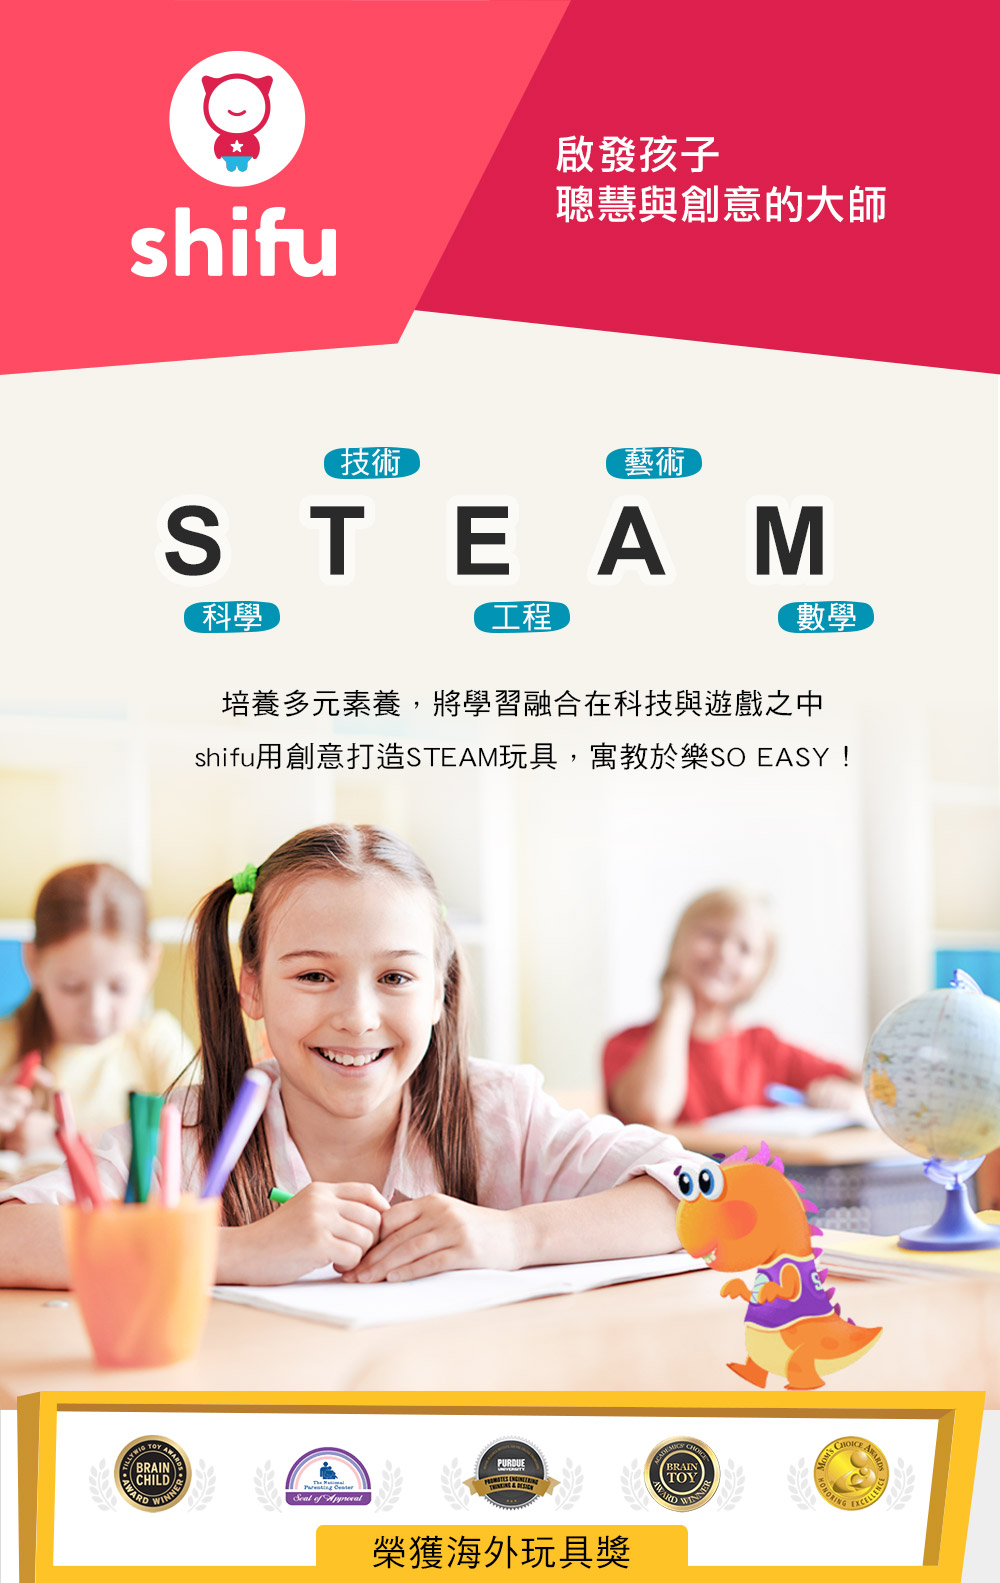 STEAM教育推薦益智玩具 | shifu 互動式玩具